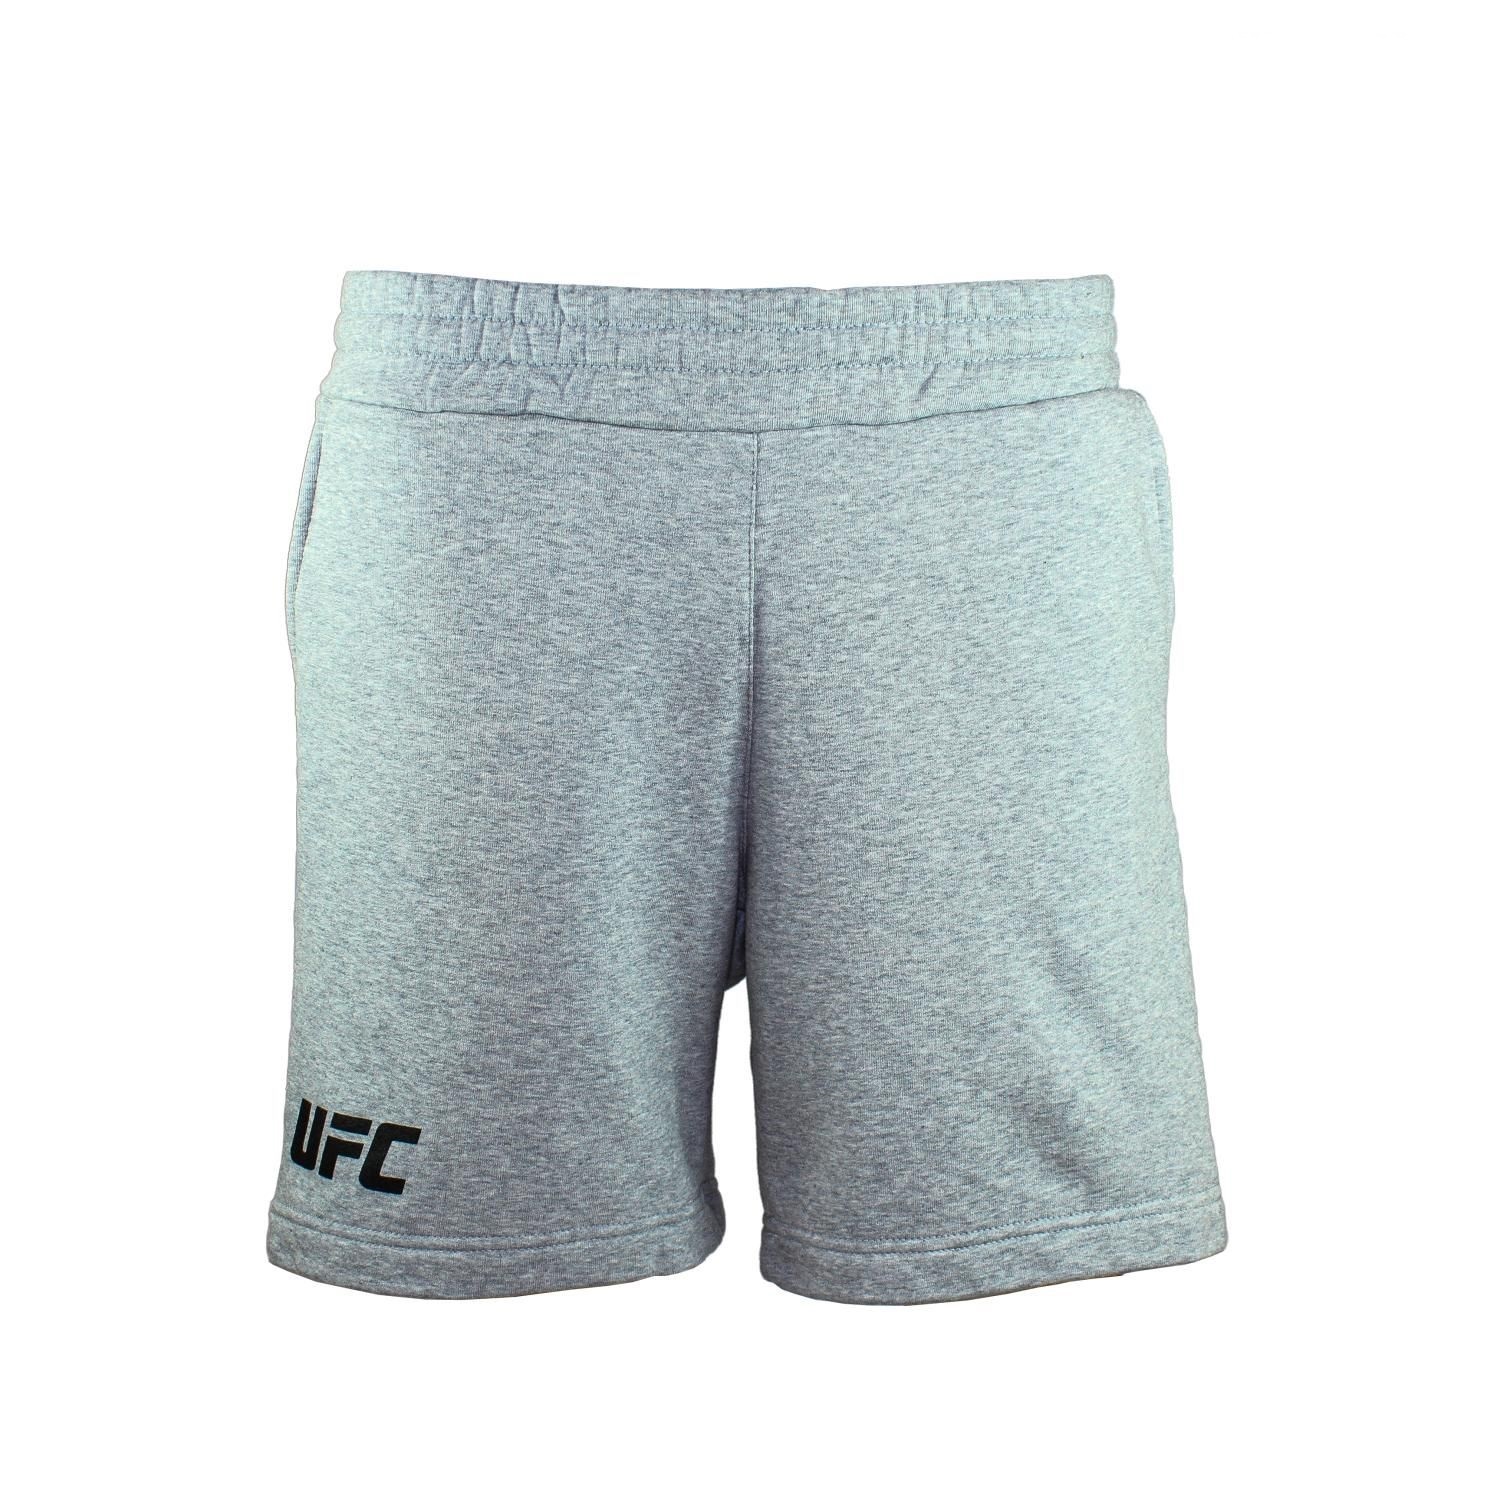 Спортивные шорты мужские UFC UFC SHORTS LOGO серые XL